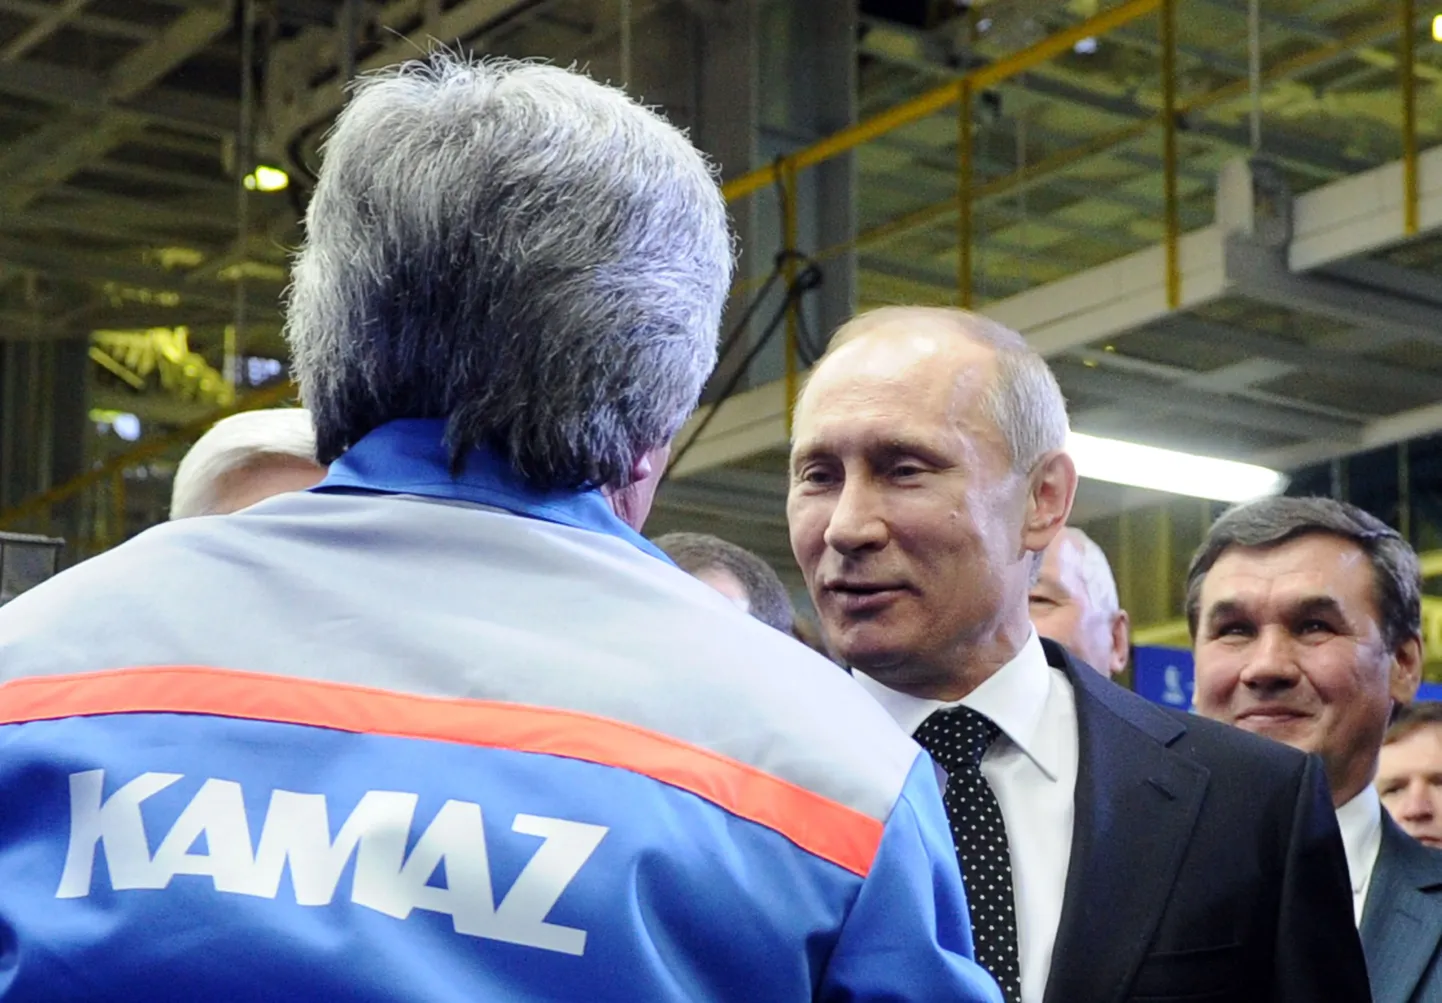 Venemaal otsitakse tööeesrindlasi. Fotol Venemaa peaminister Vladimir Putin külastamas Kamazi autotehast